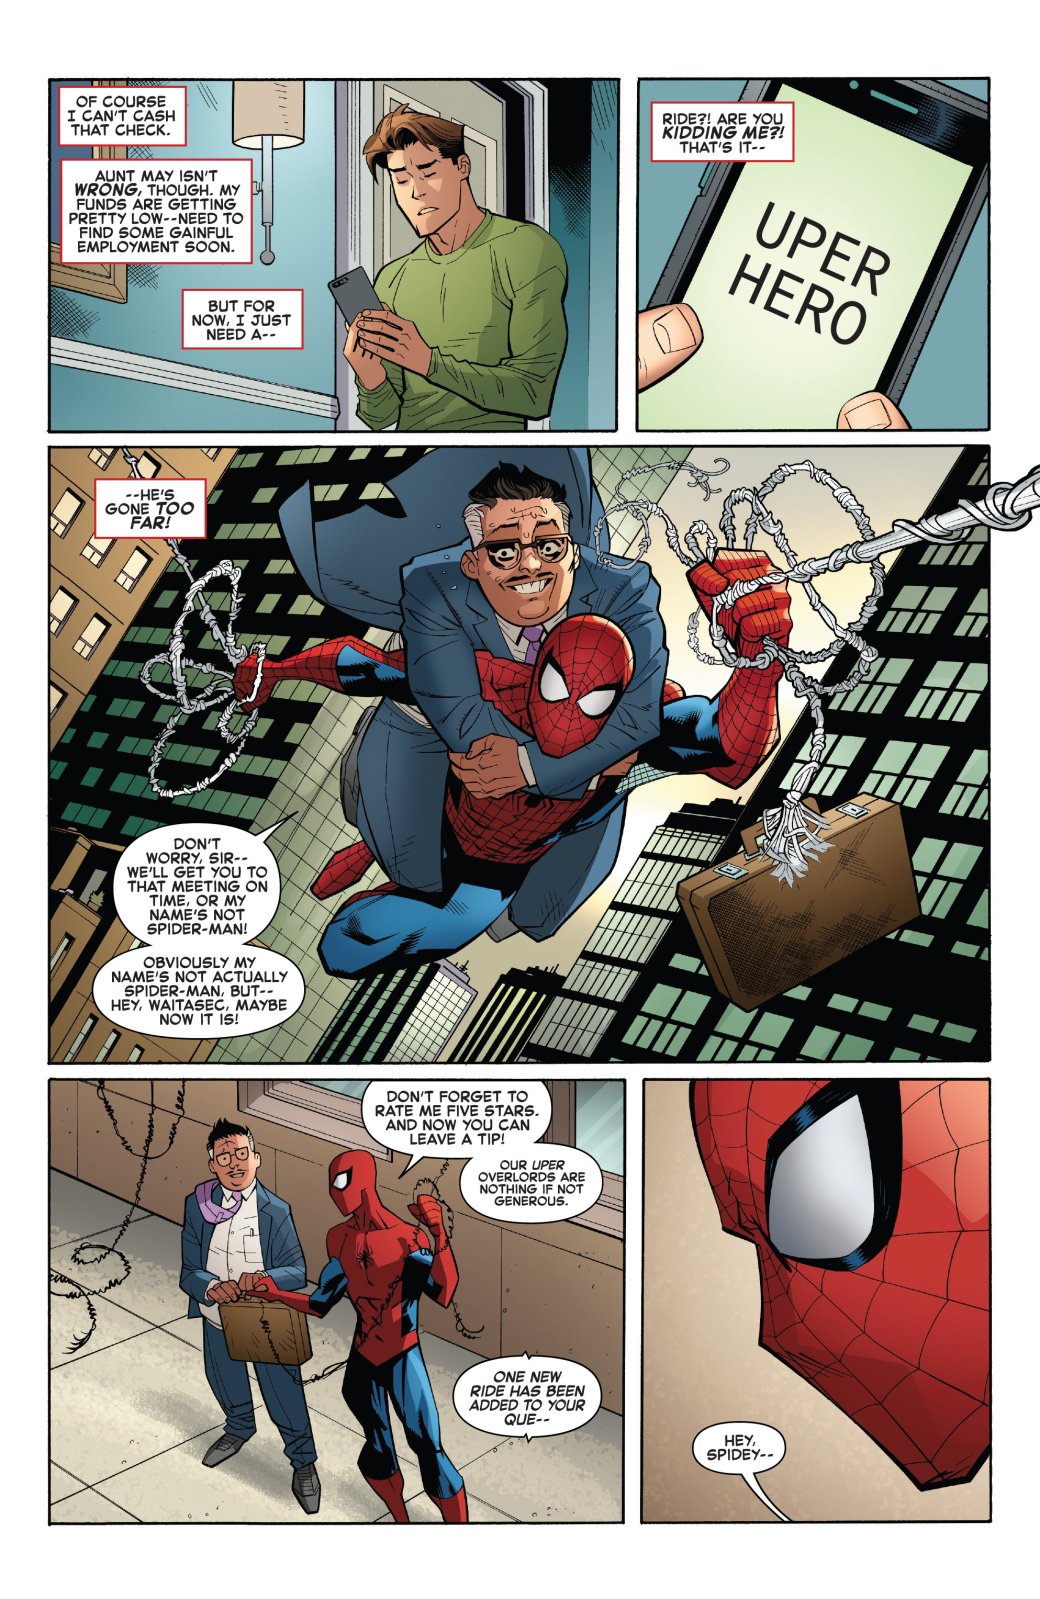 Галерея Человек-паук: Возвращение к основам. Как Marvel спасает супергероя от самой себя - 2 фото